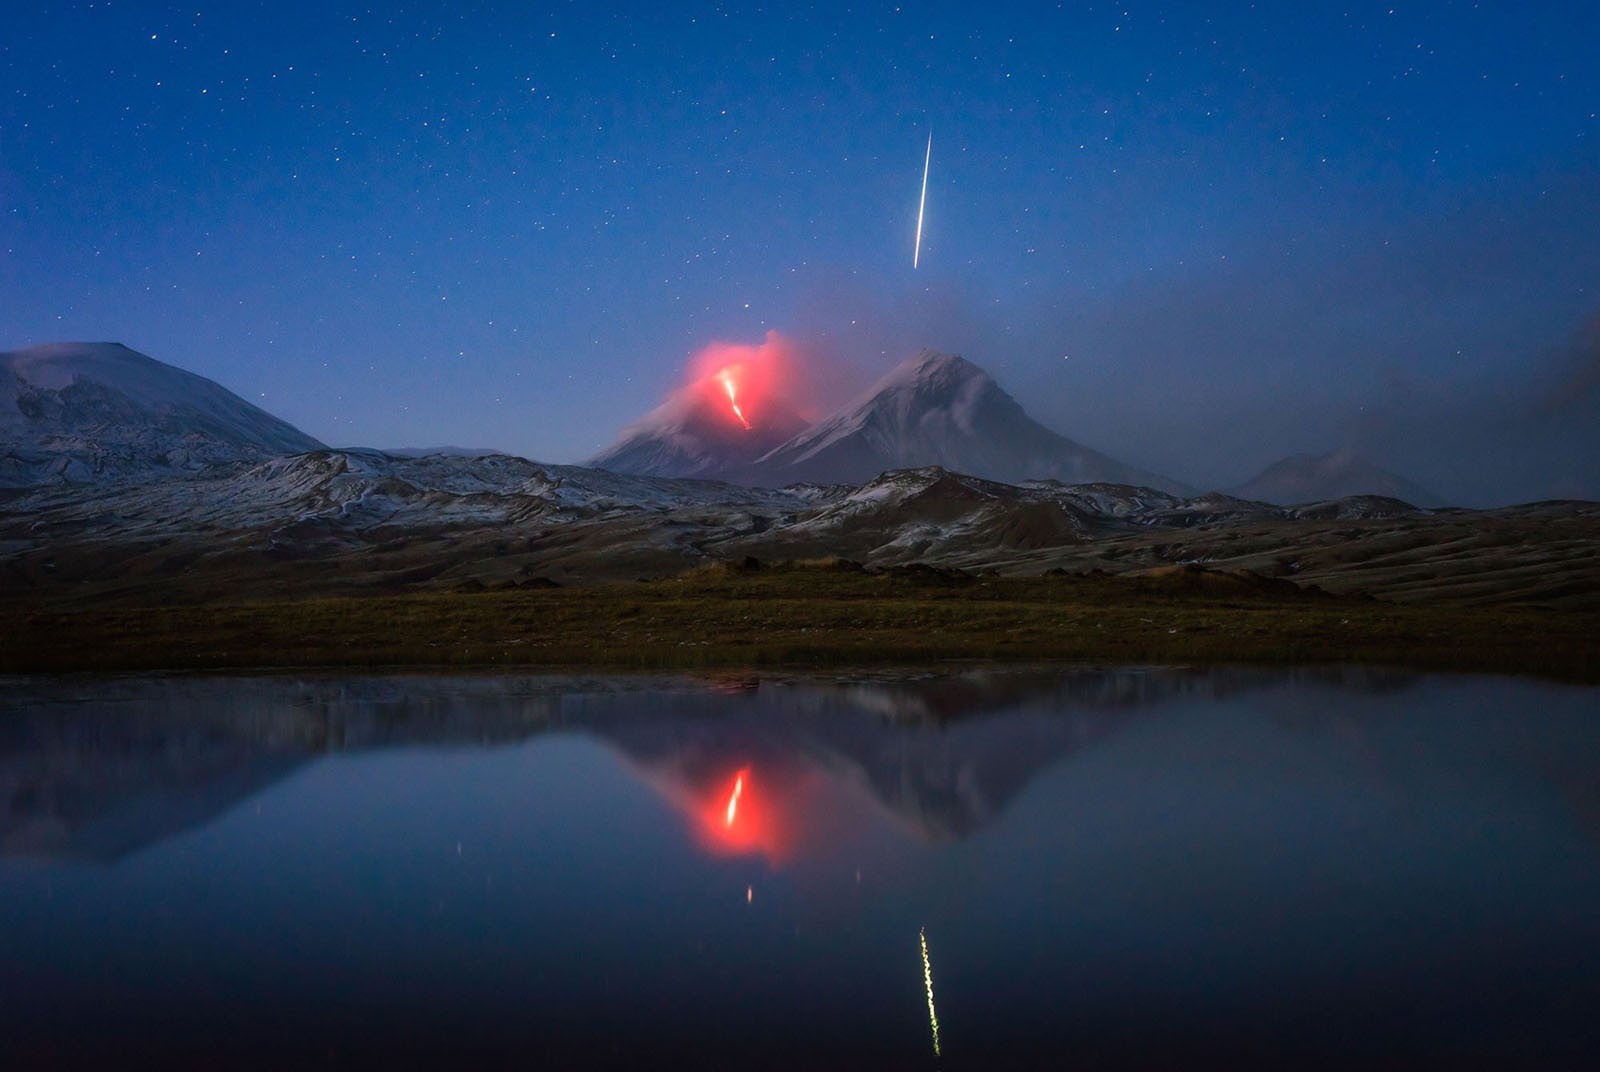 Падающая звезда над вулканом Ключевская Сопка, полуостров Камчатка. Фотограф Даниэл Кордан